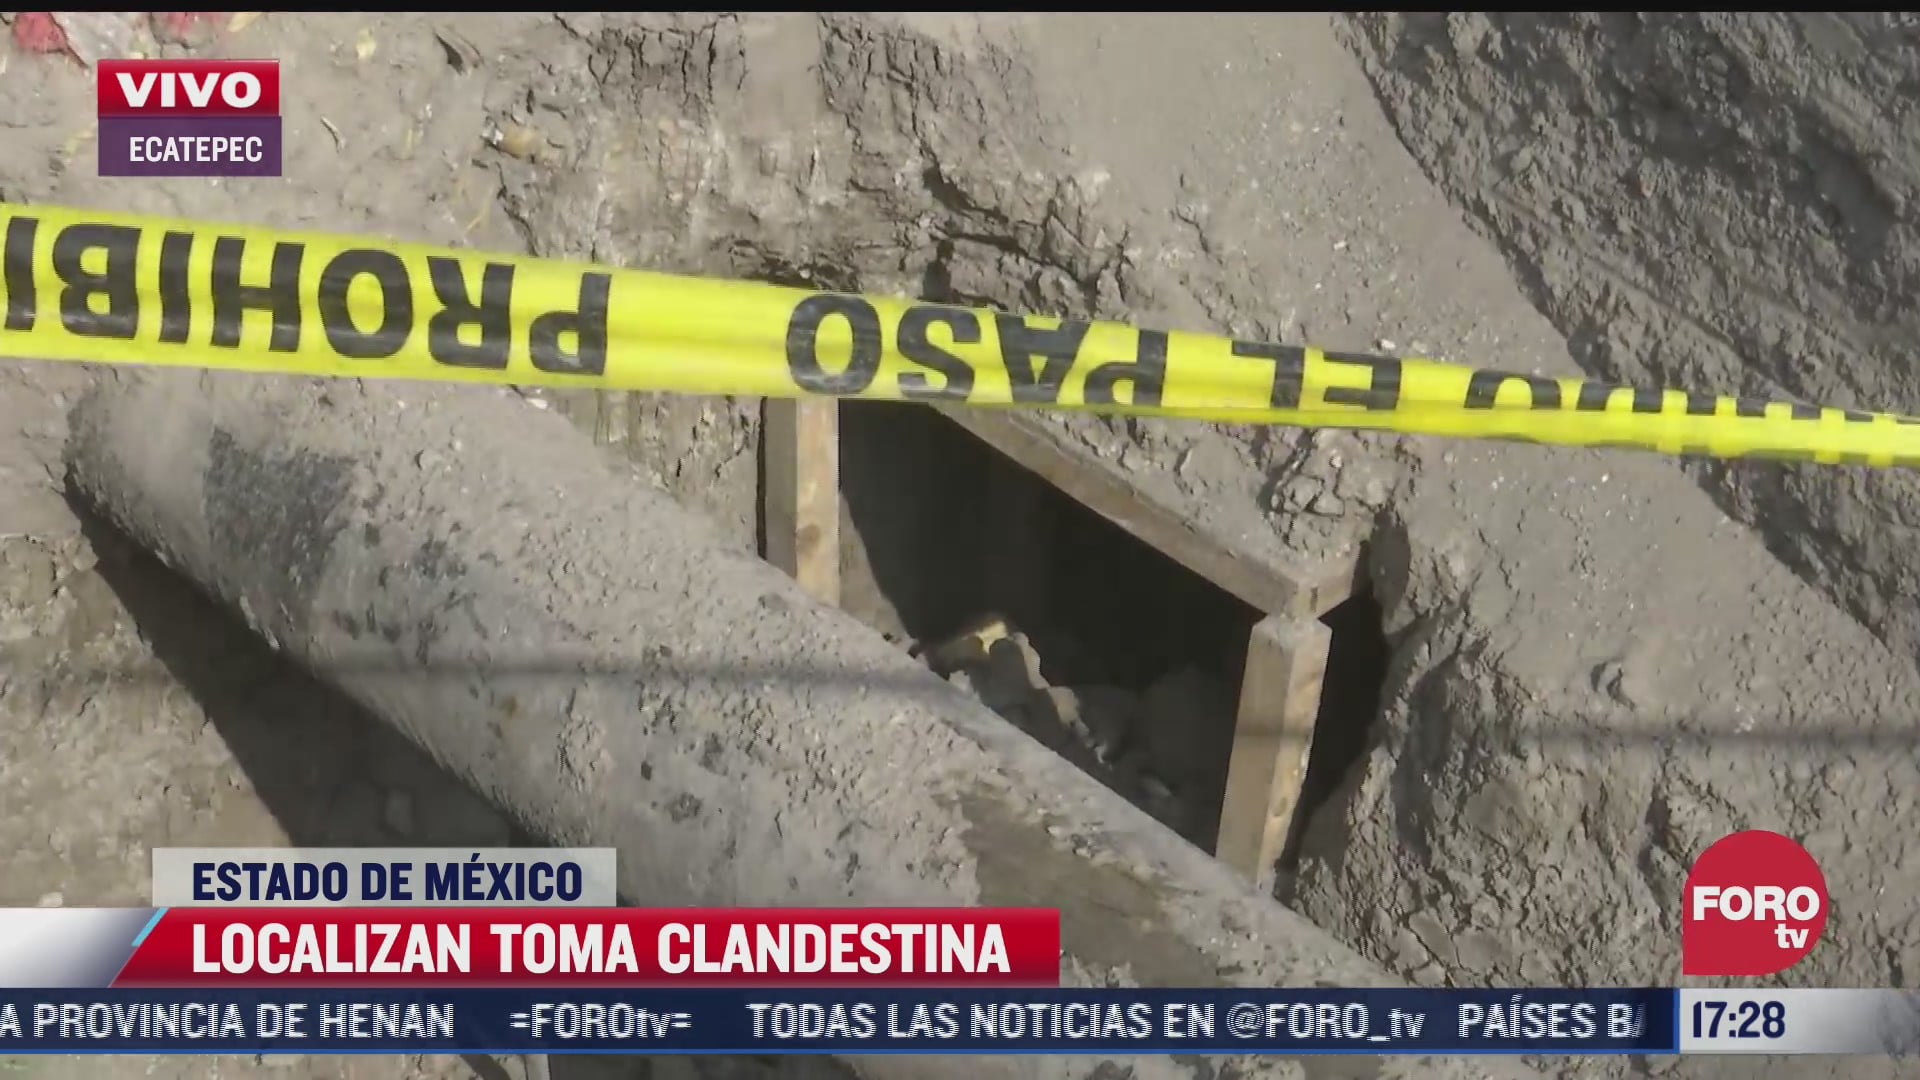 localizan toma clandestina en ecatepec estado de mexico